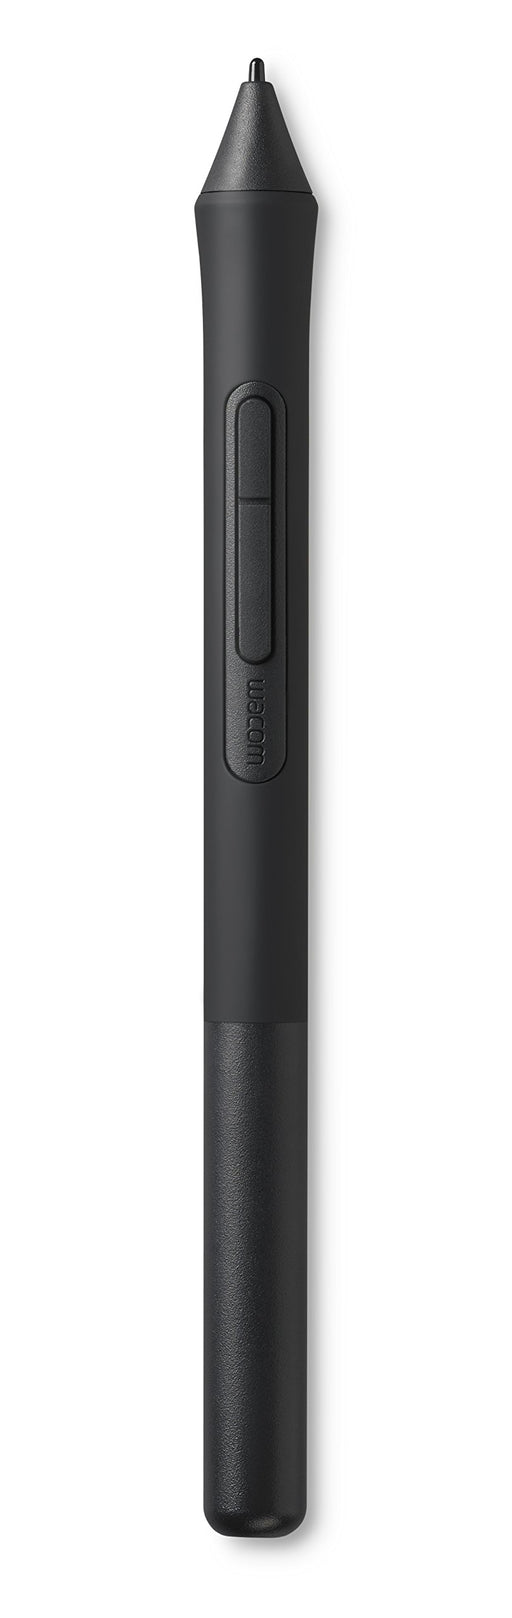 Wacom Pen 4K Intuos optional pen Supports 4096 levels of pen pressure LP1100K_2